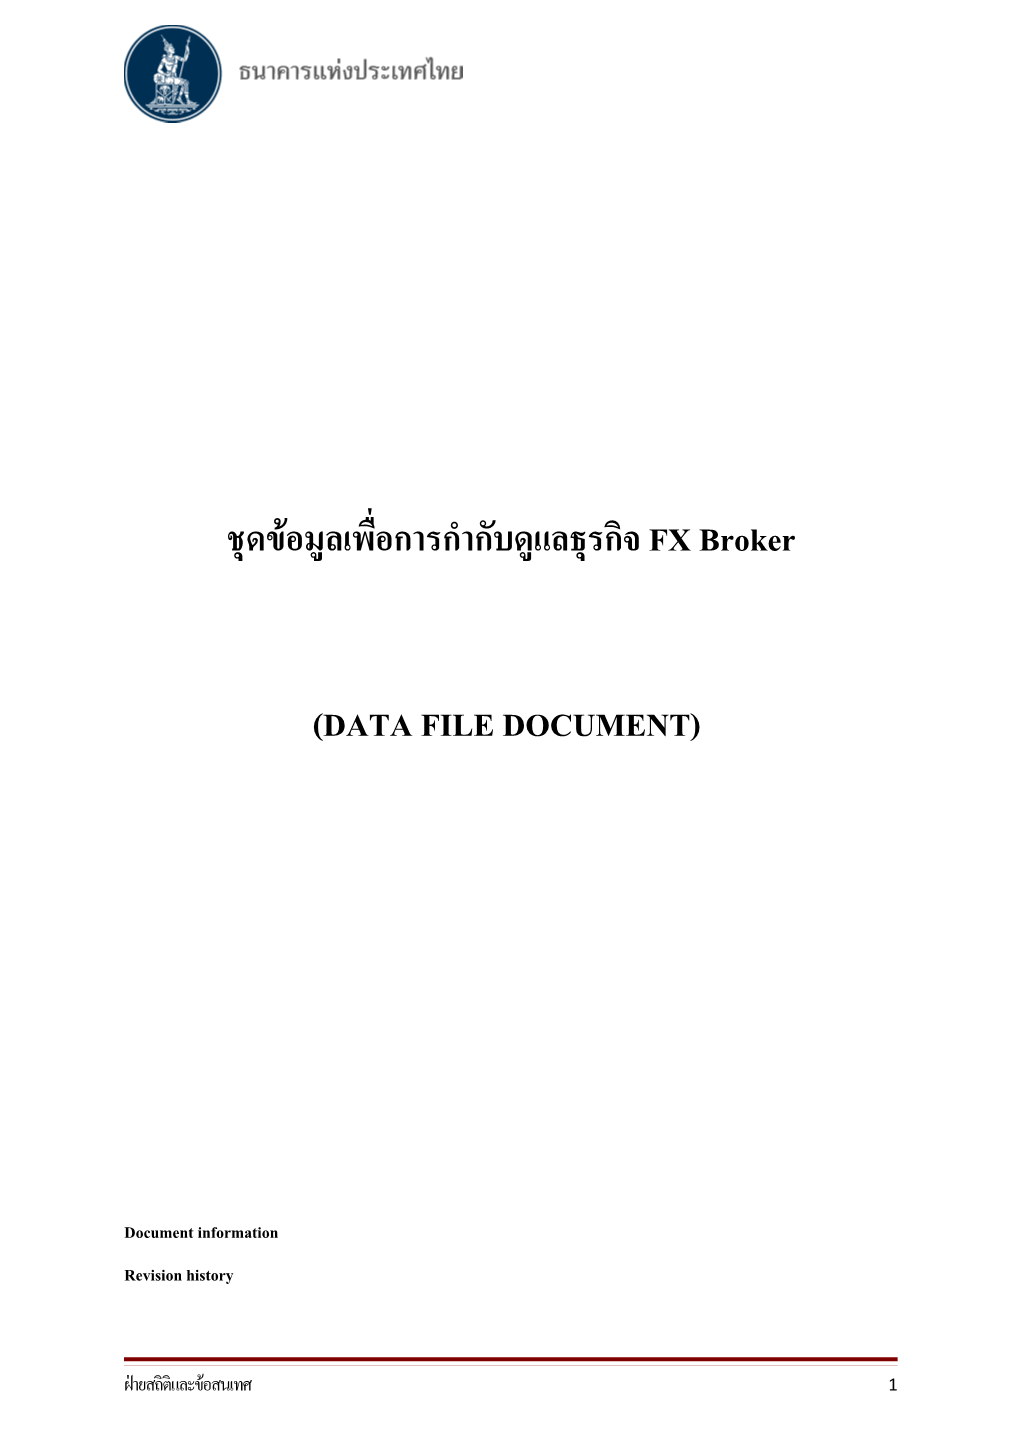 Data File Document V1.0 As of 6 มิ.ย. 2560